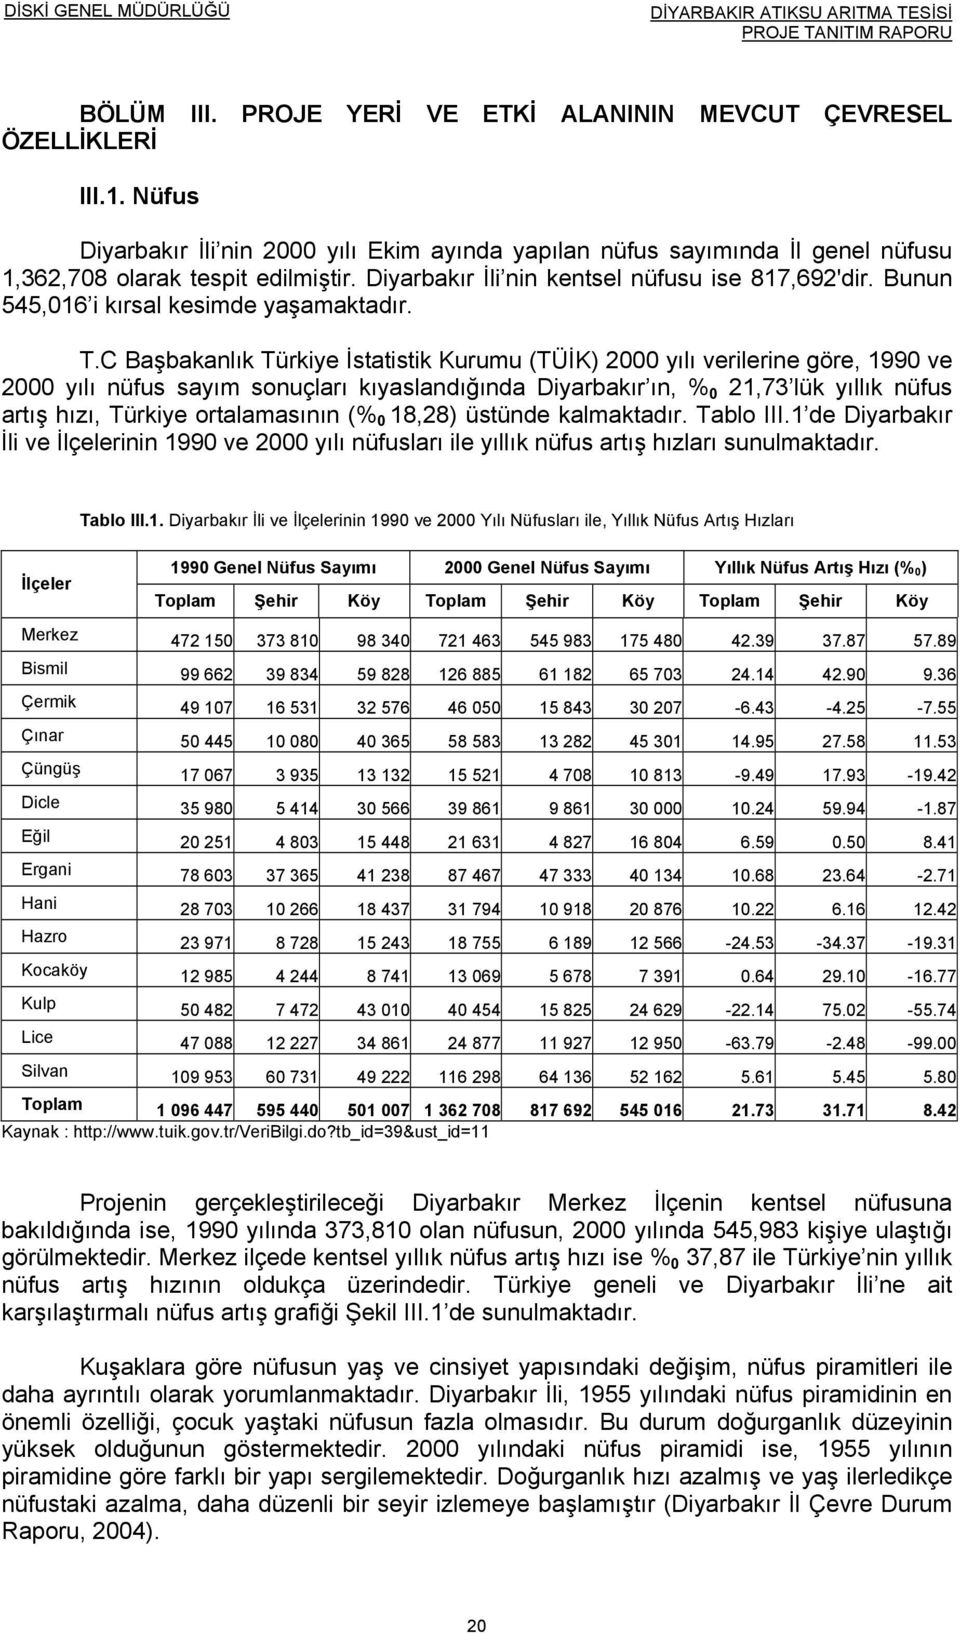 C Başbakanlık Türkiye İstatistik Kurumu (TÜİK) 2000 yılı verilerine göre, 1990 ve 2000 yılı nüfus sayım sonuçları kıyaslandığında Diyarbakır ın, % 0 21,73 lük yıllık nüfus artış hızı, Türkiye